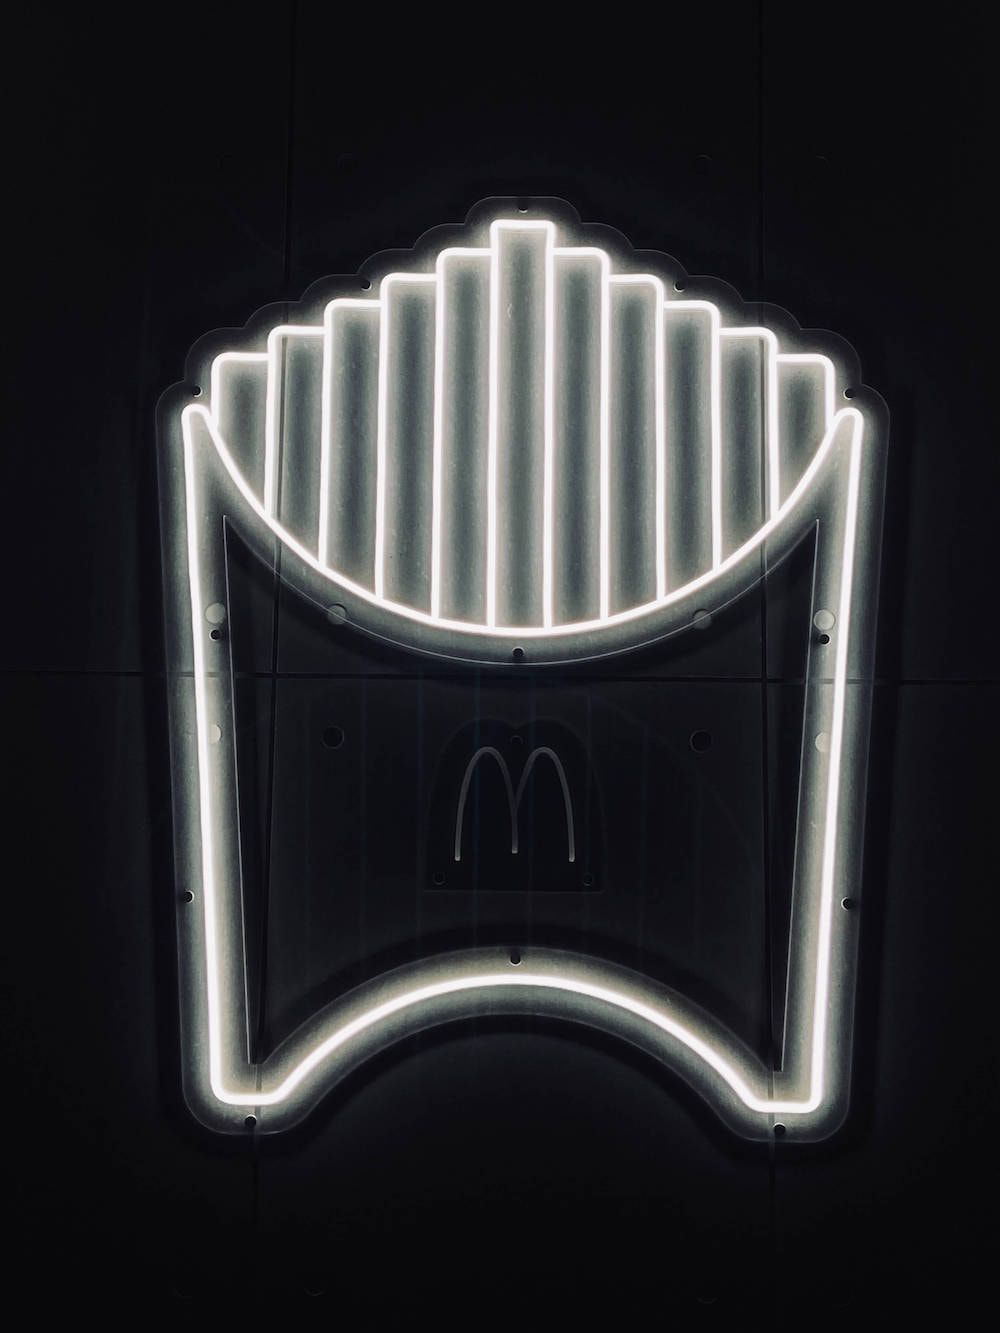 Neon McDonald's Fries